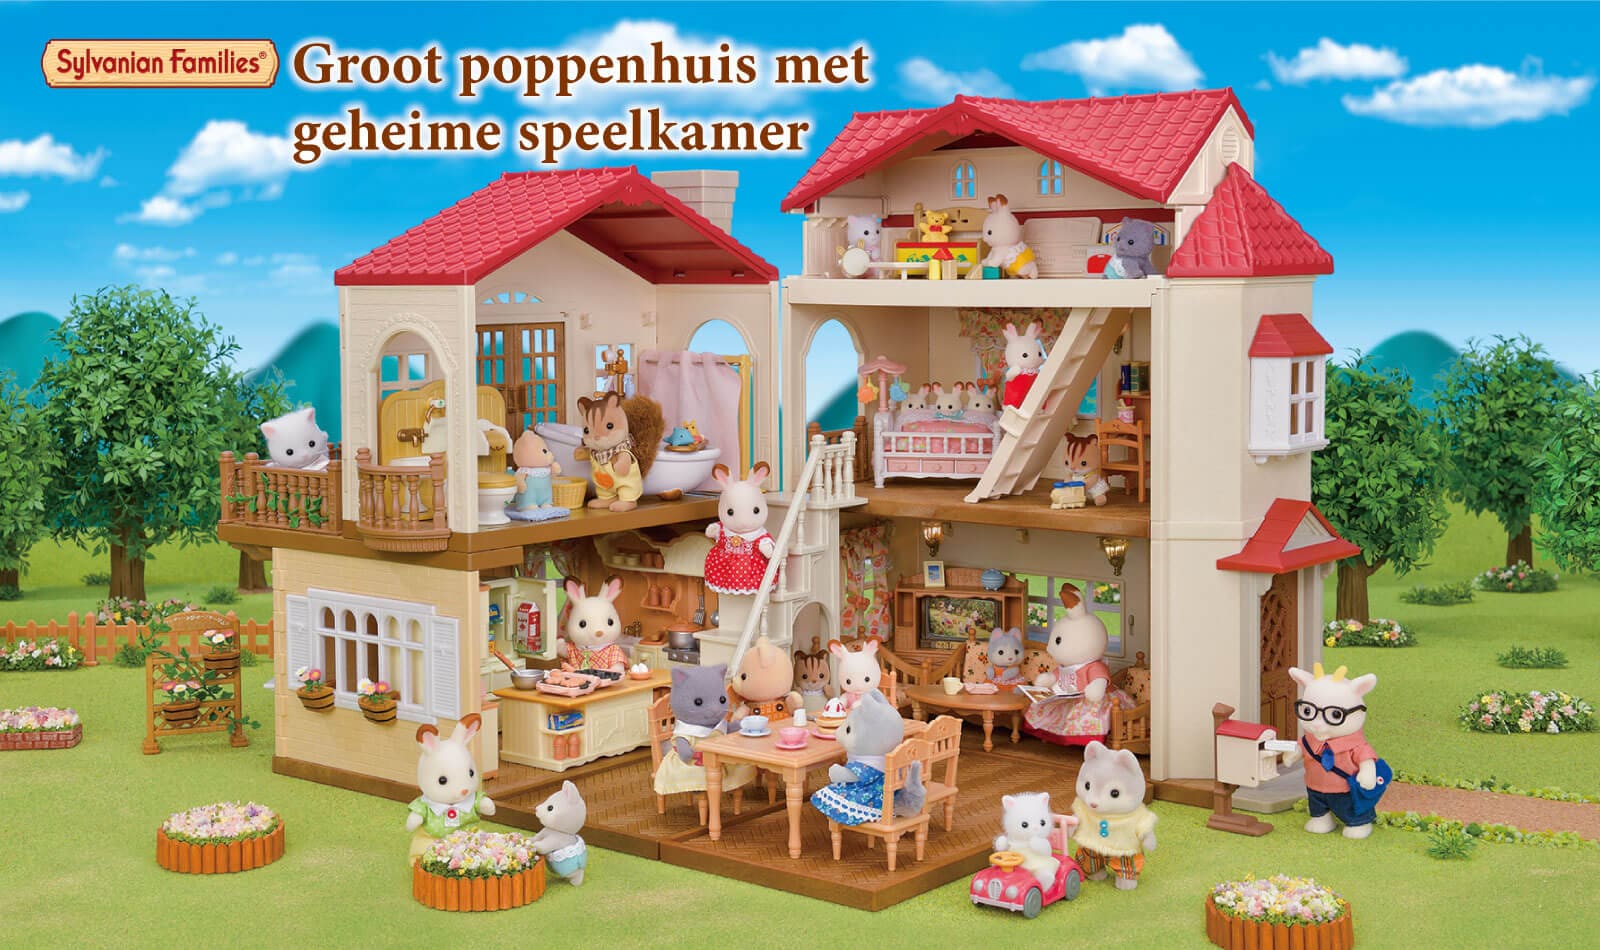 Groot poppenhuis met geheime speelkamer